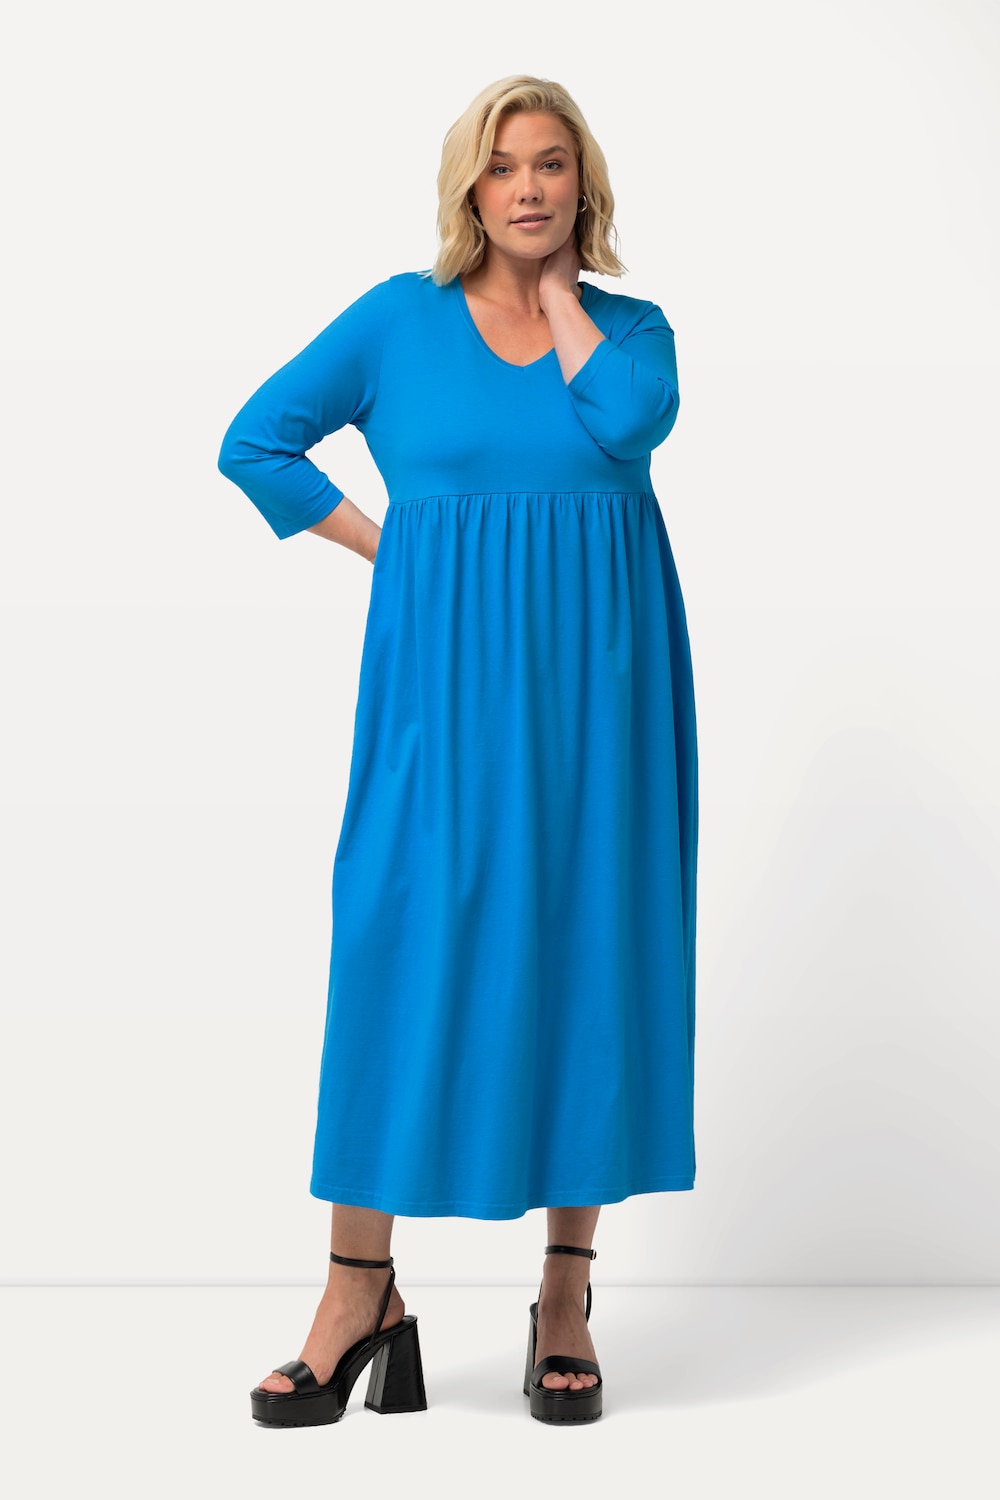 Grote Maten Jersey jurk, Dames, turquoise, Maat: 58/60, Katoen, Ulla Popken